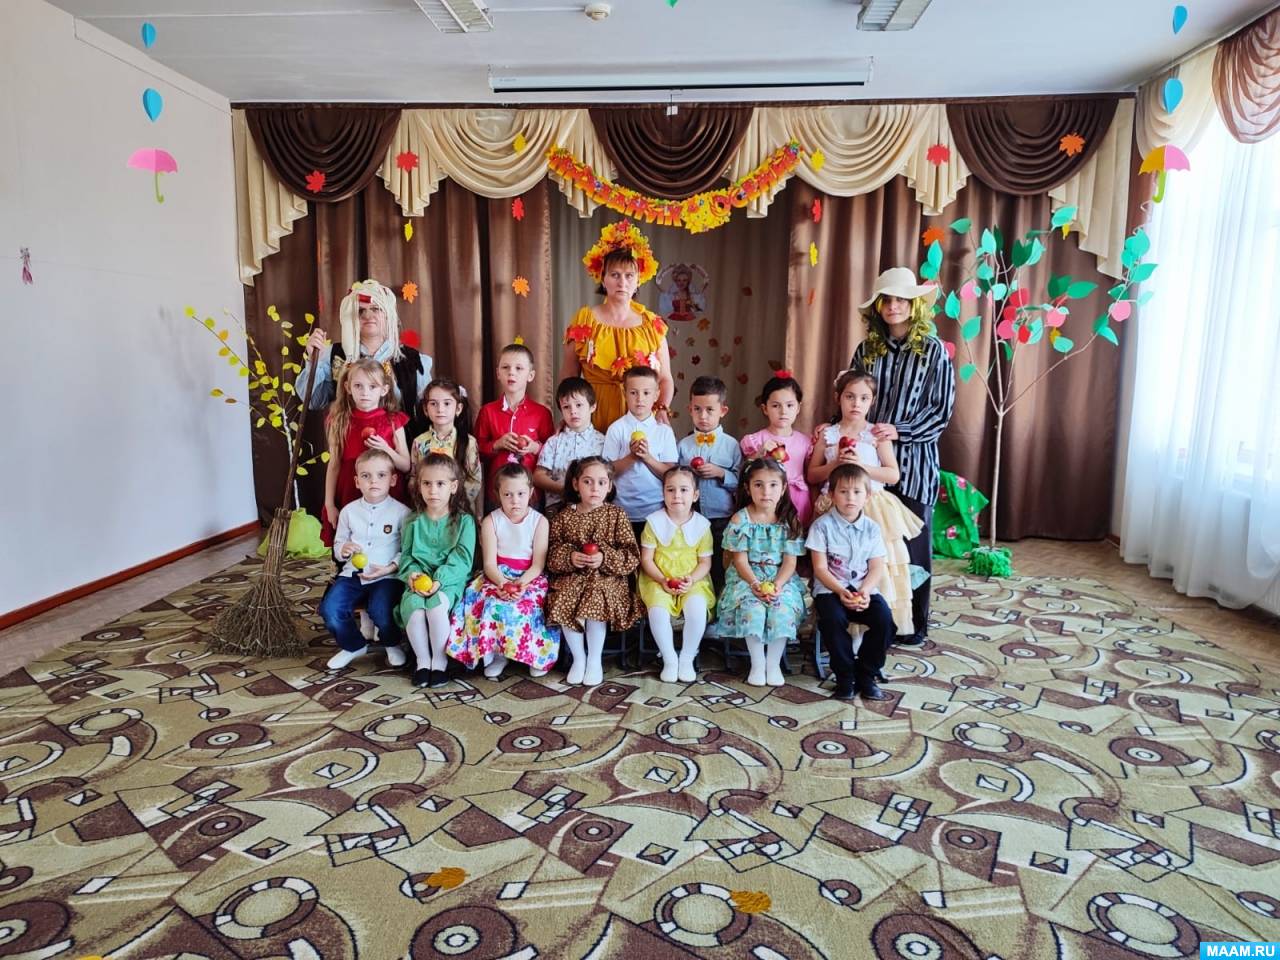 Сценарий мероприятия в детском саду «Праздник Осени»